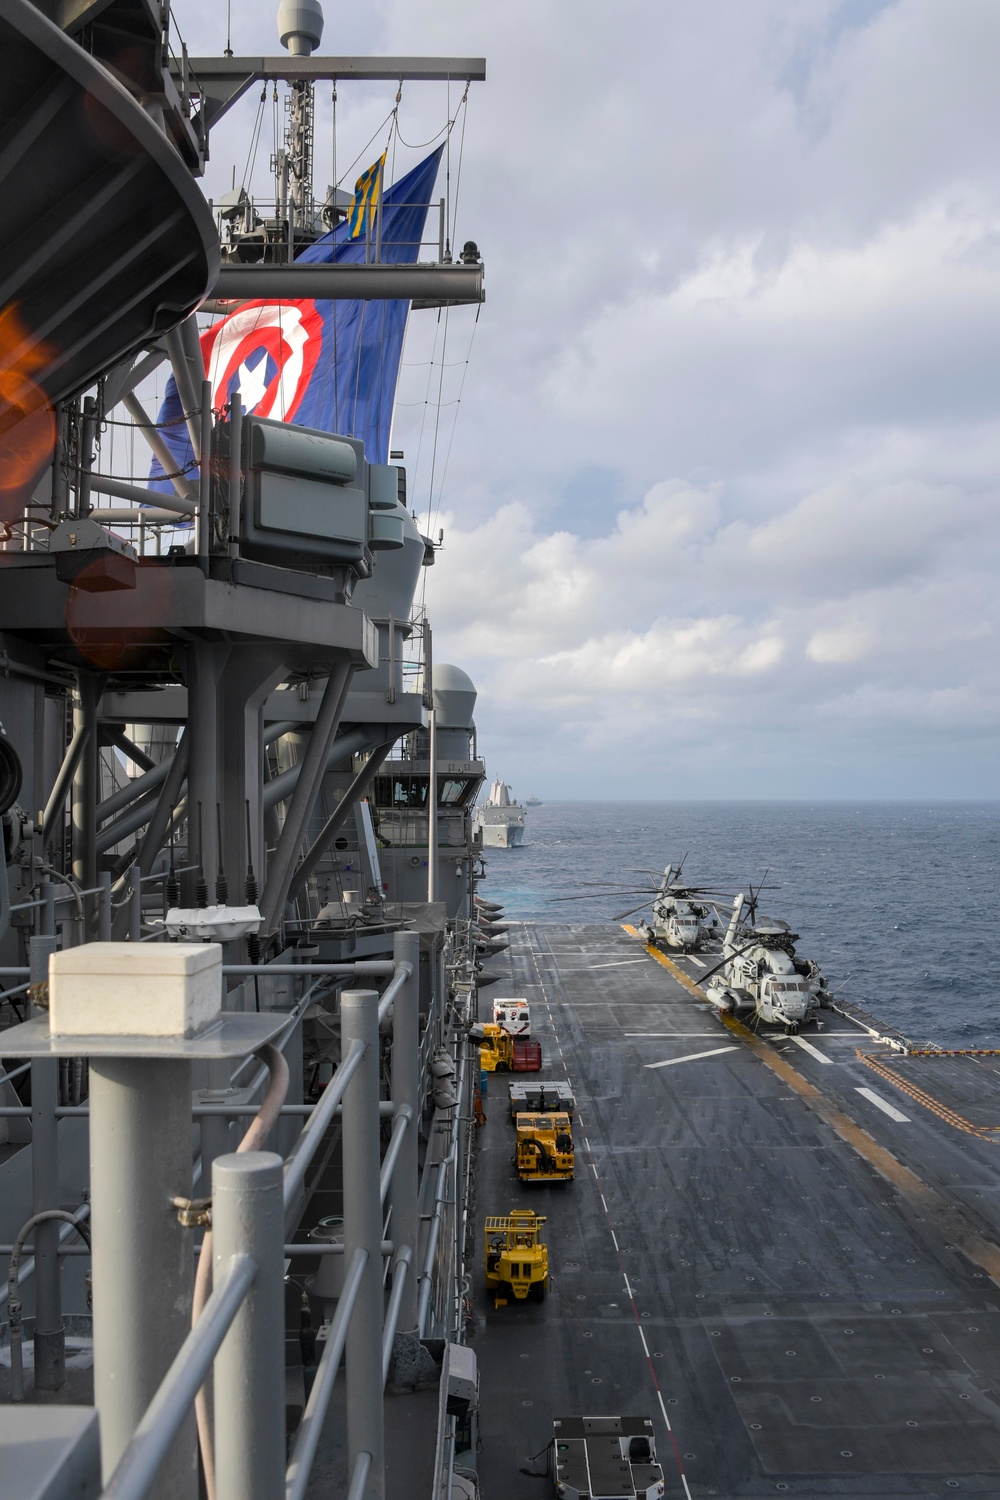 USS America Integrates with USS Blue Ridge